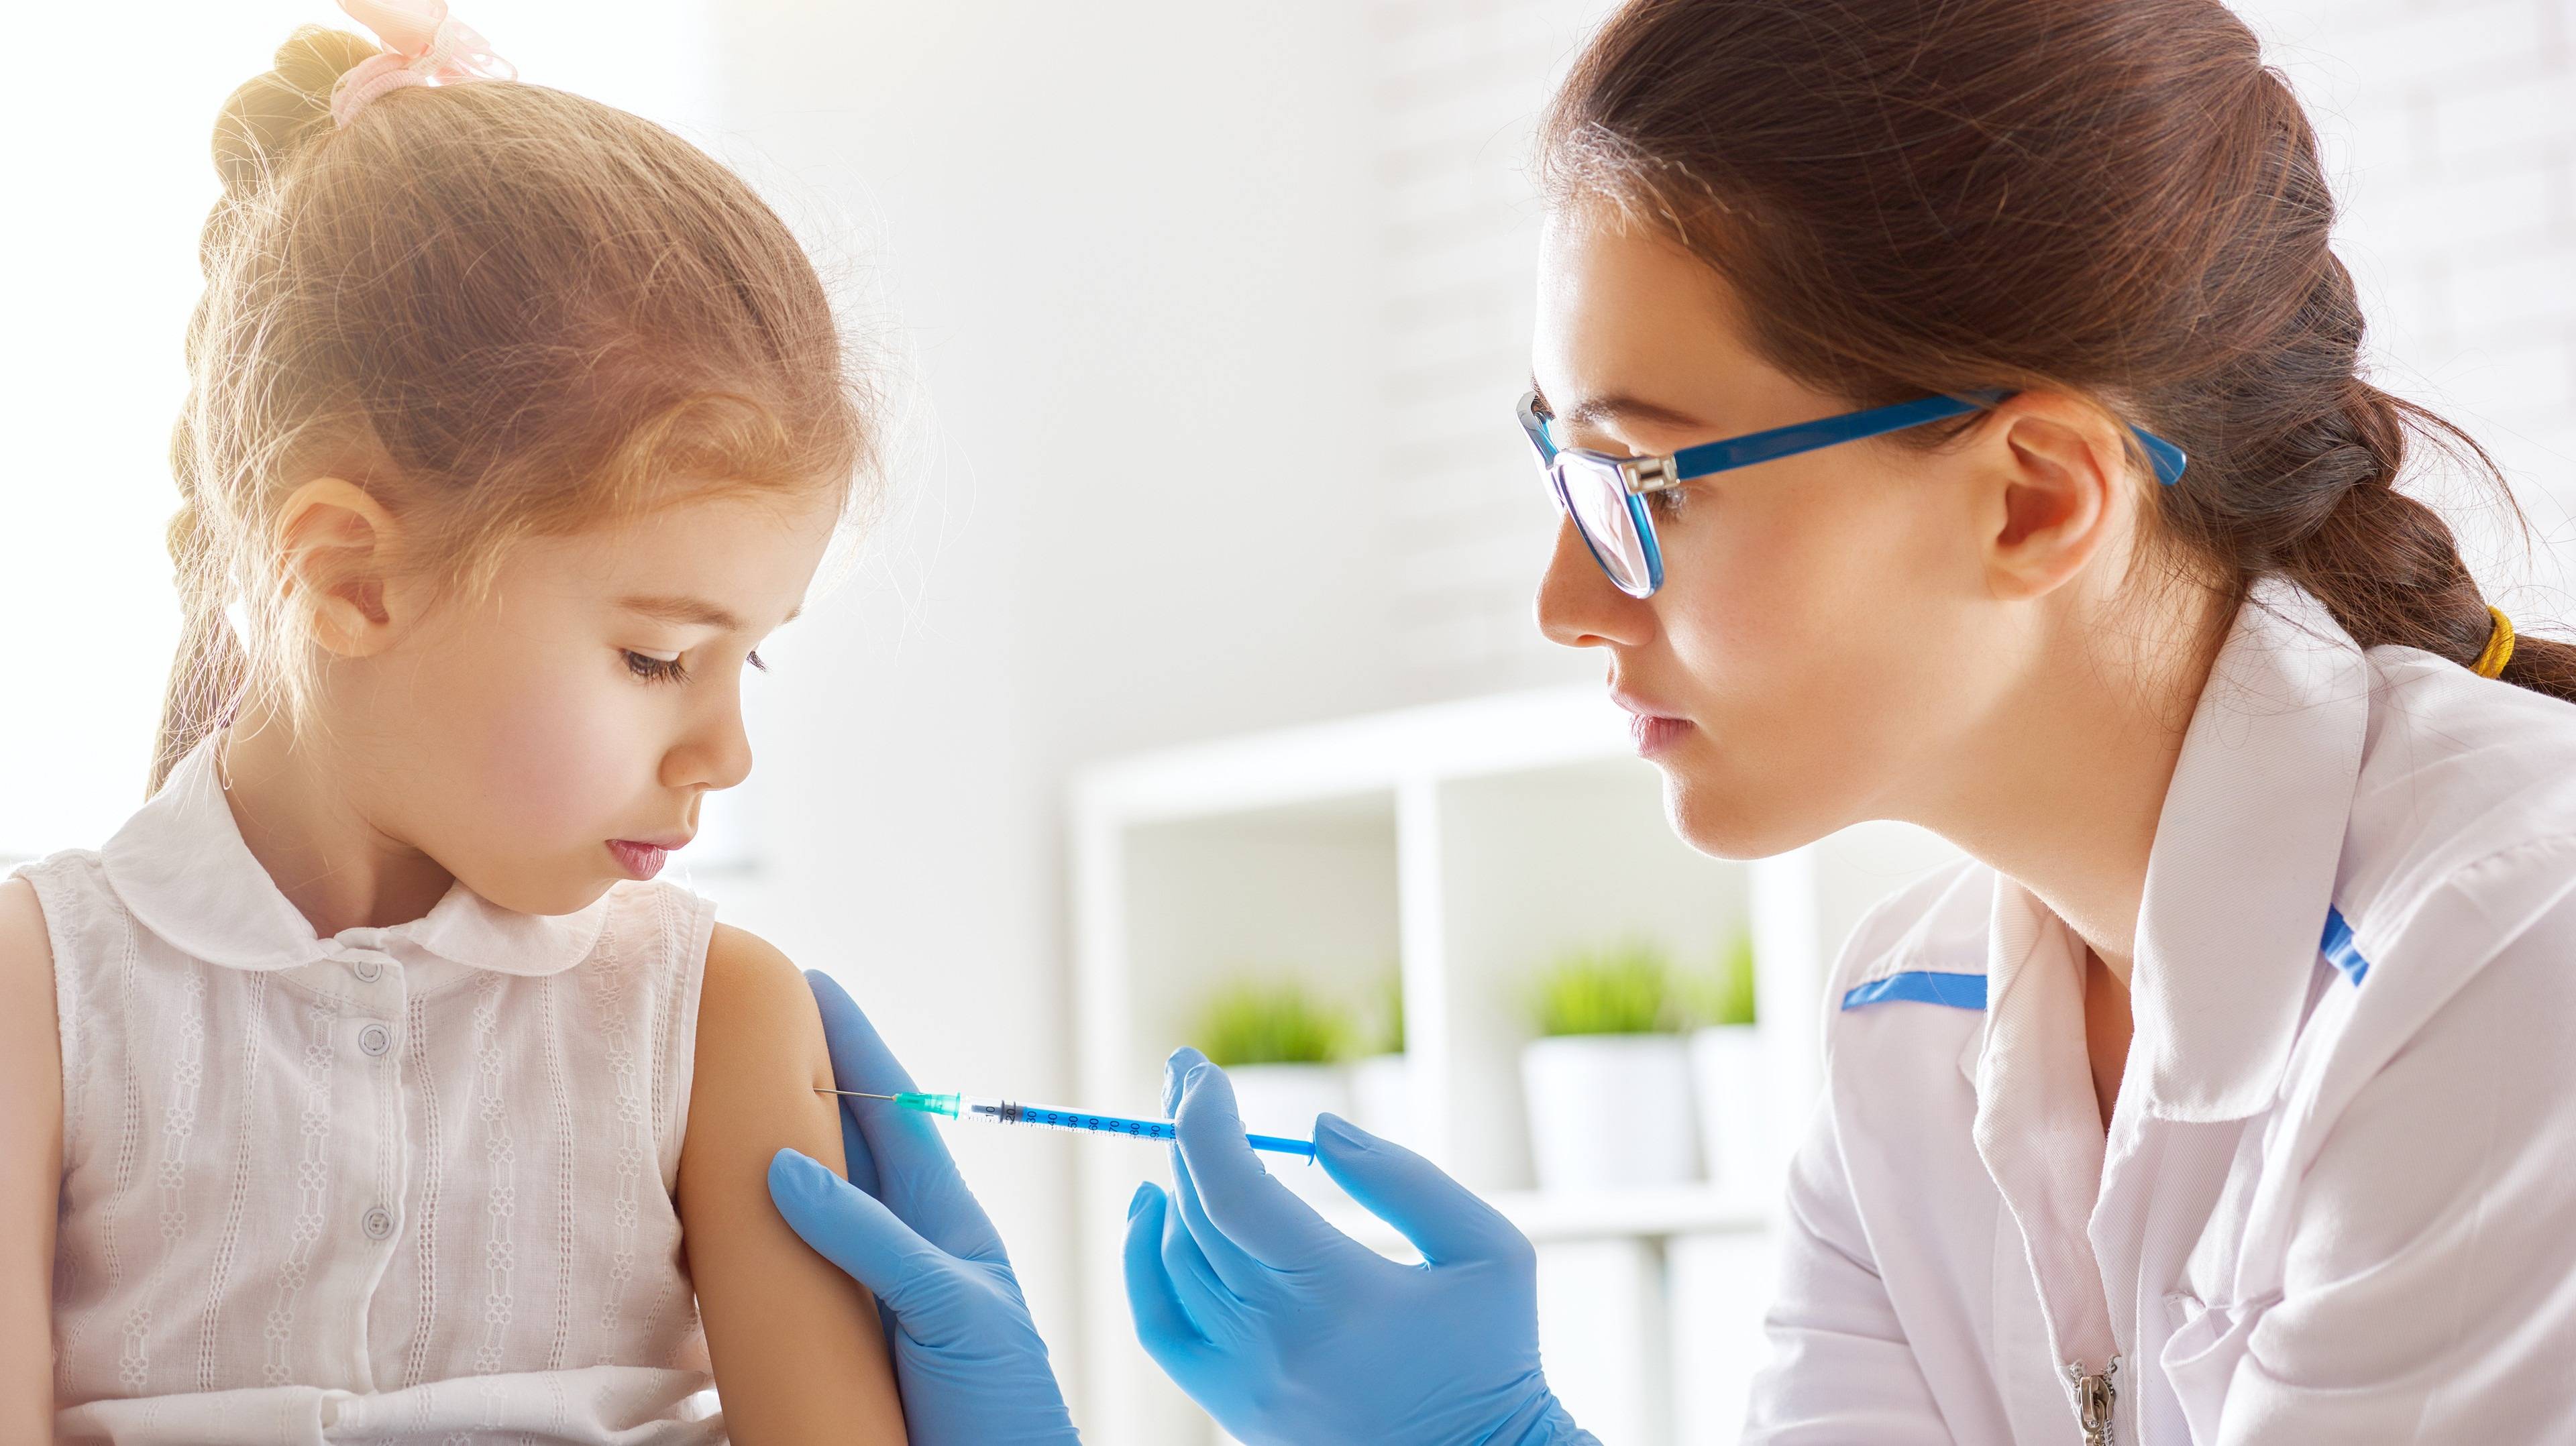 SARS疫苗专家谈新冠疫苗：别太乐观